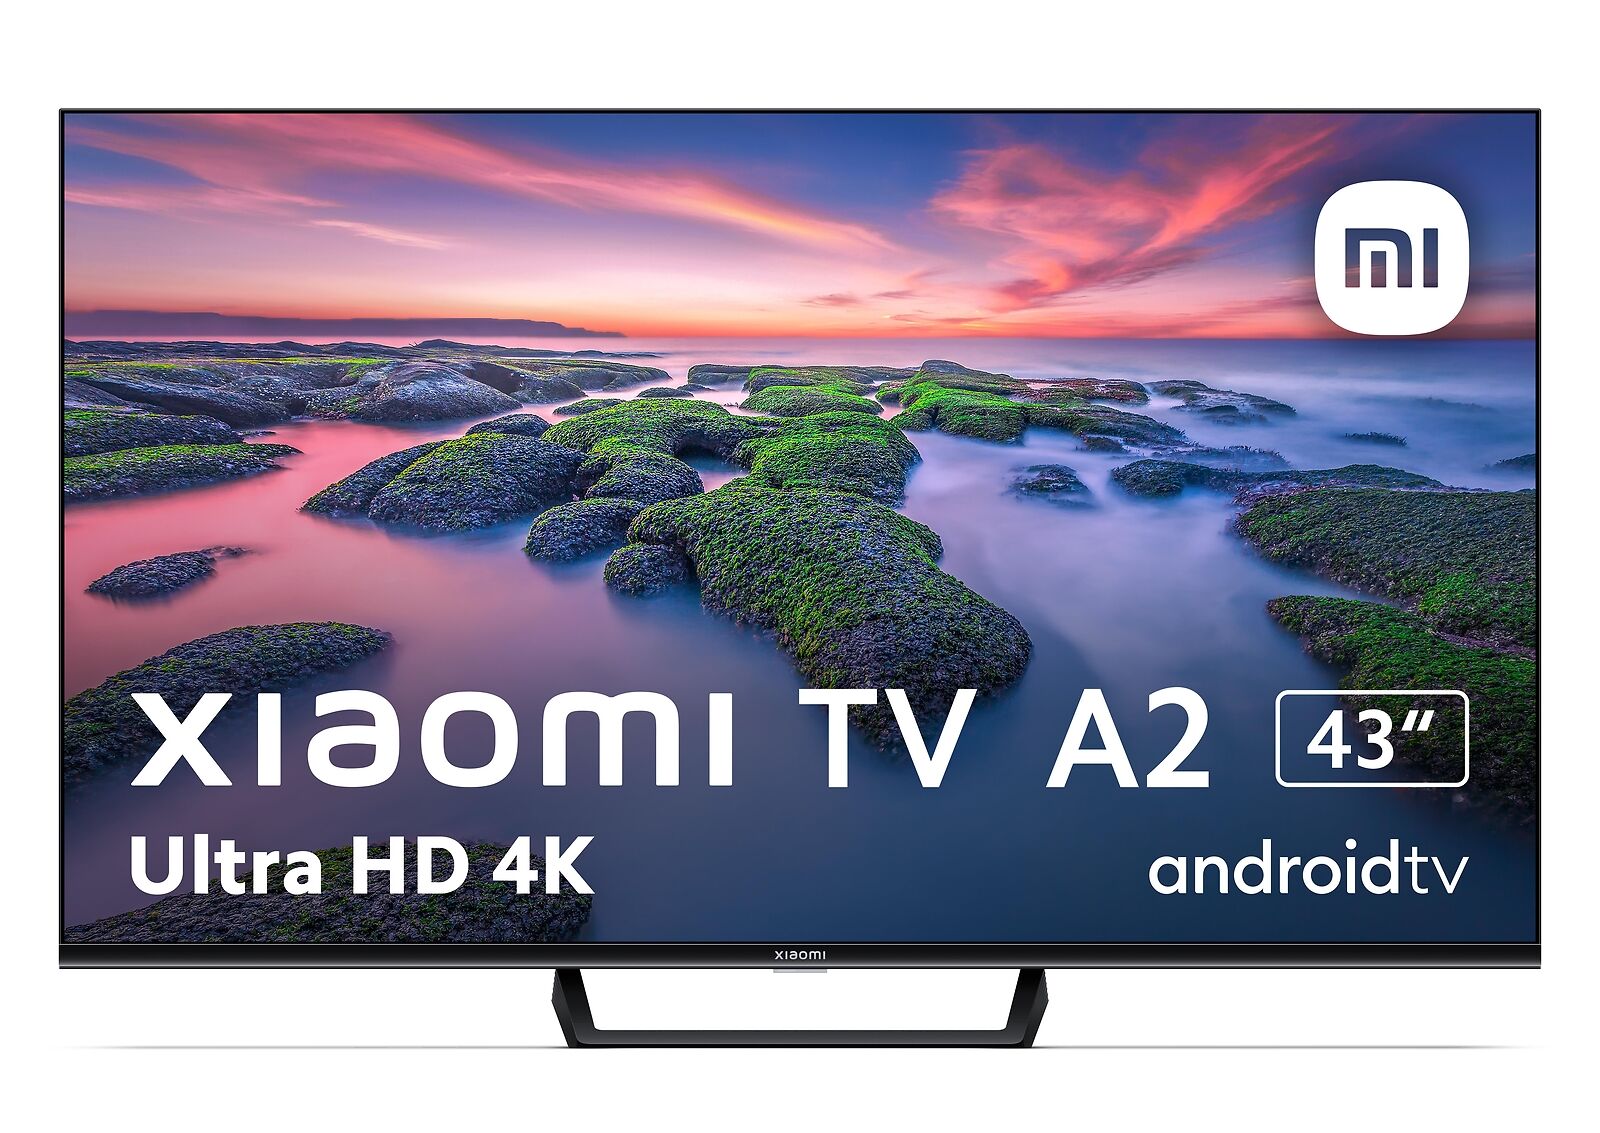 Xiaomi TV A2 43 pollici in sconto su eBay a meno di 250 euro